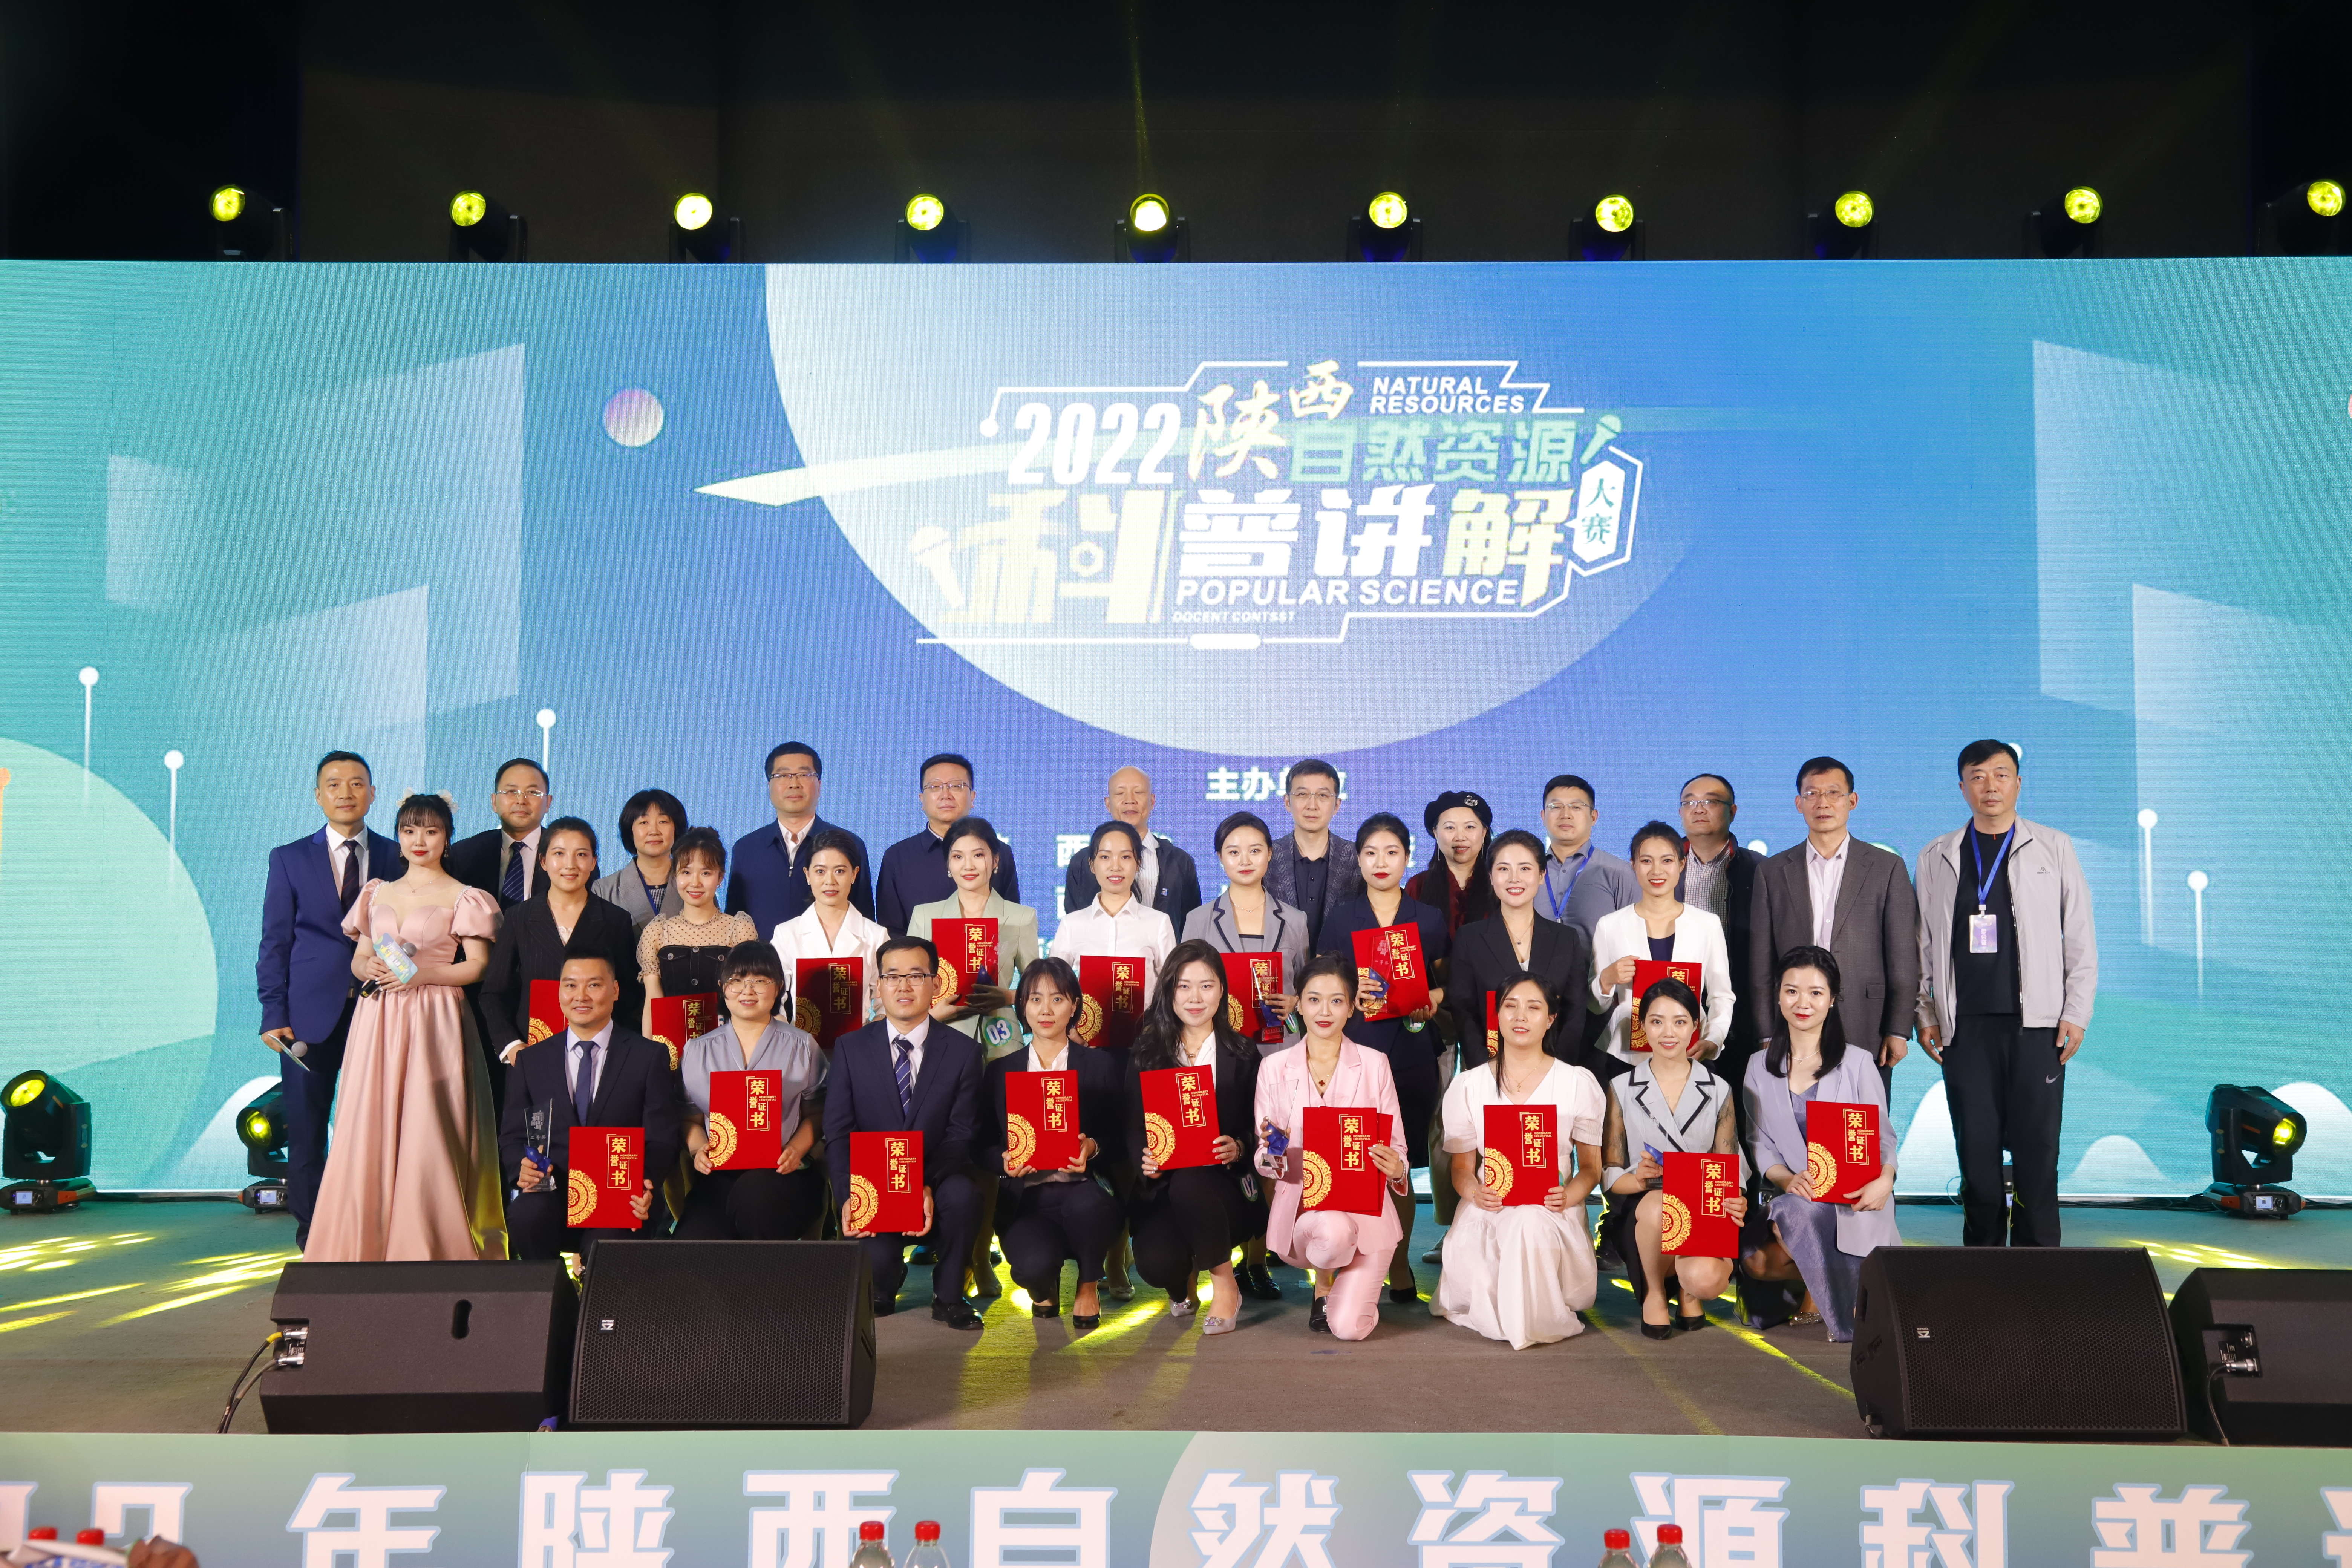 测试公司在2022年陕西省自然资源 科普讲解大赛中喜获佳绩